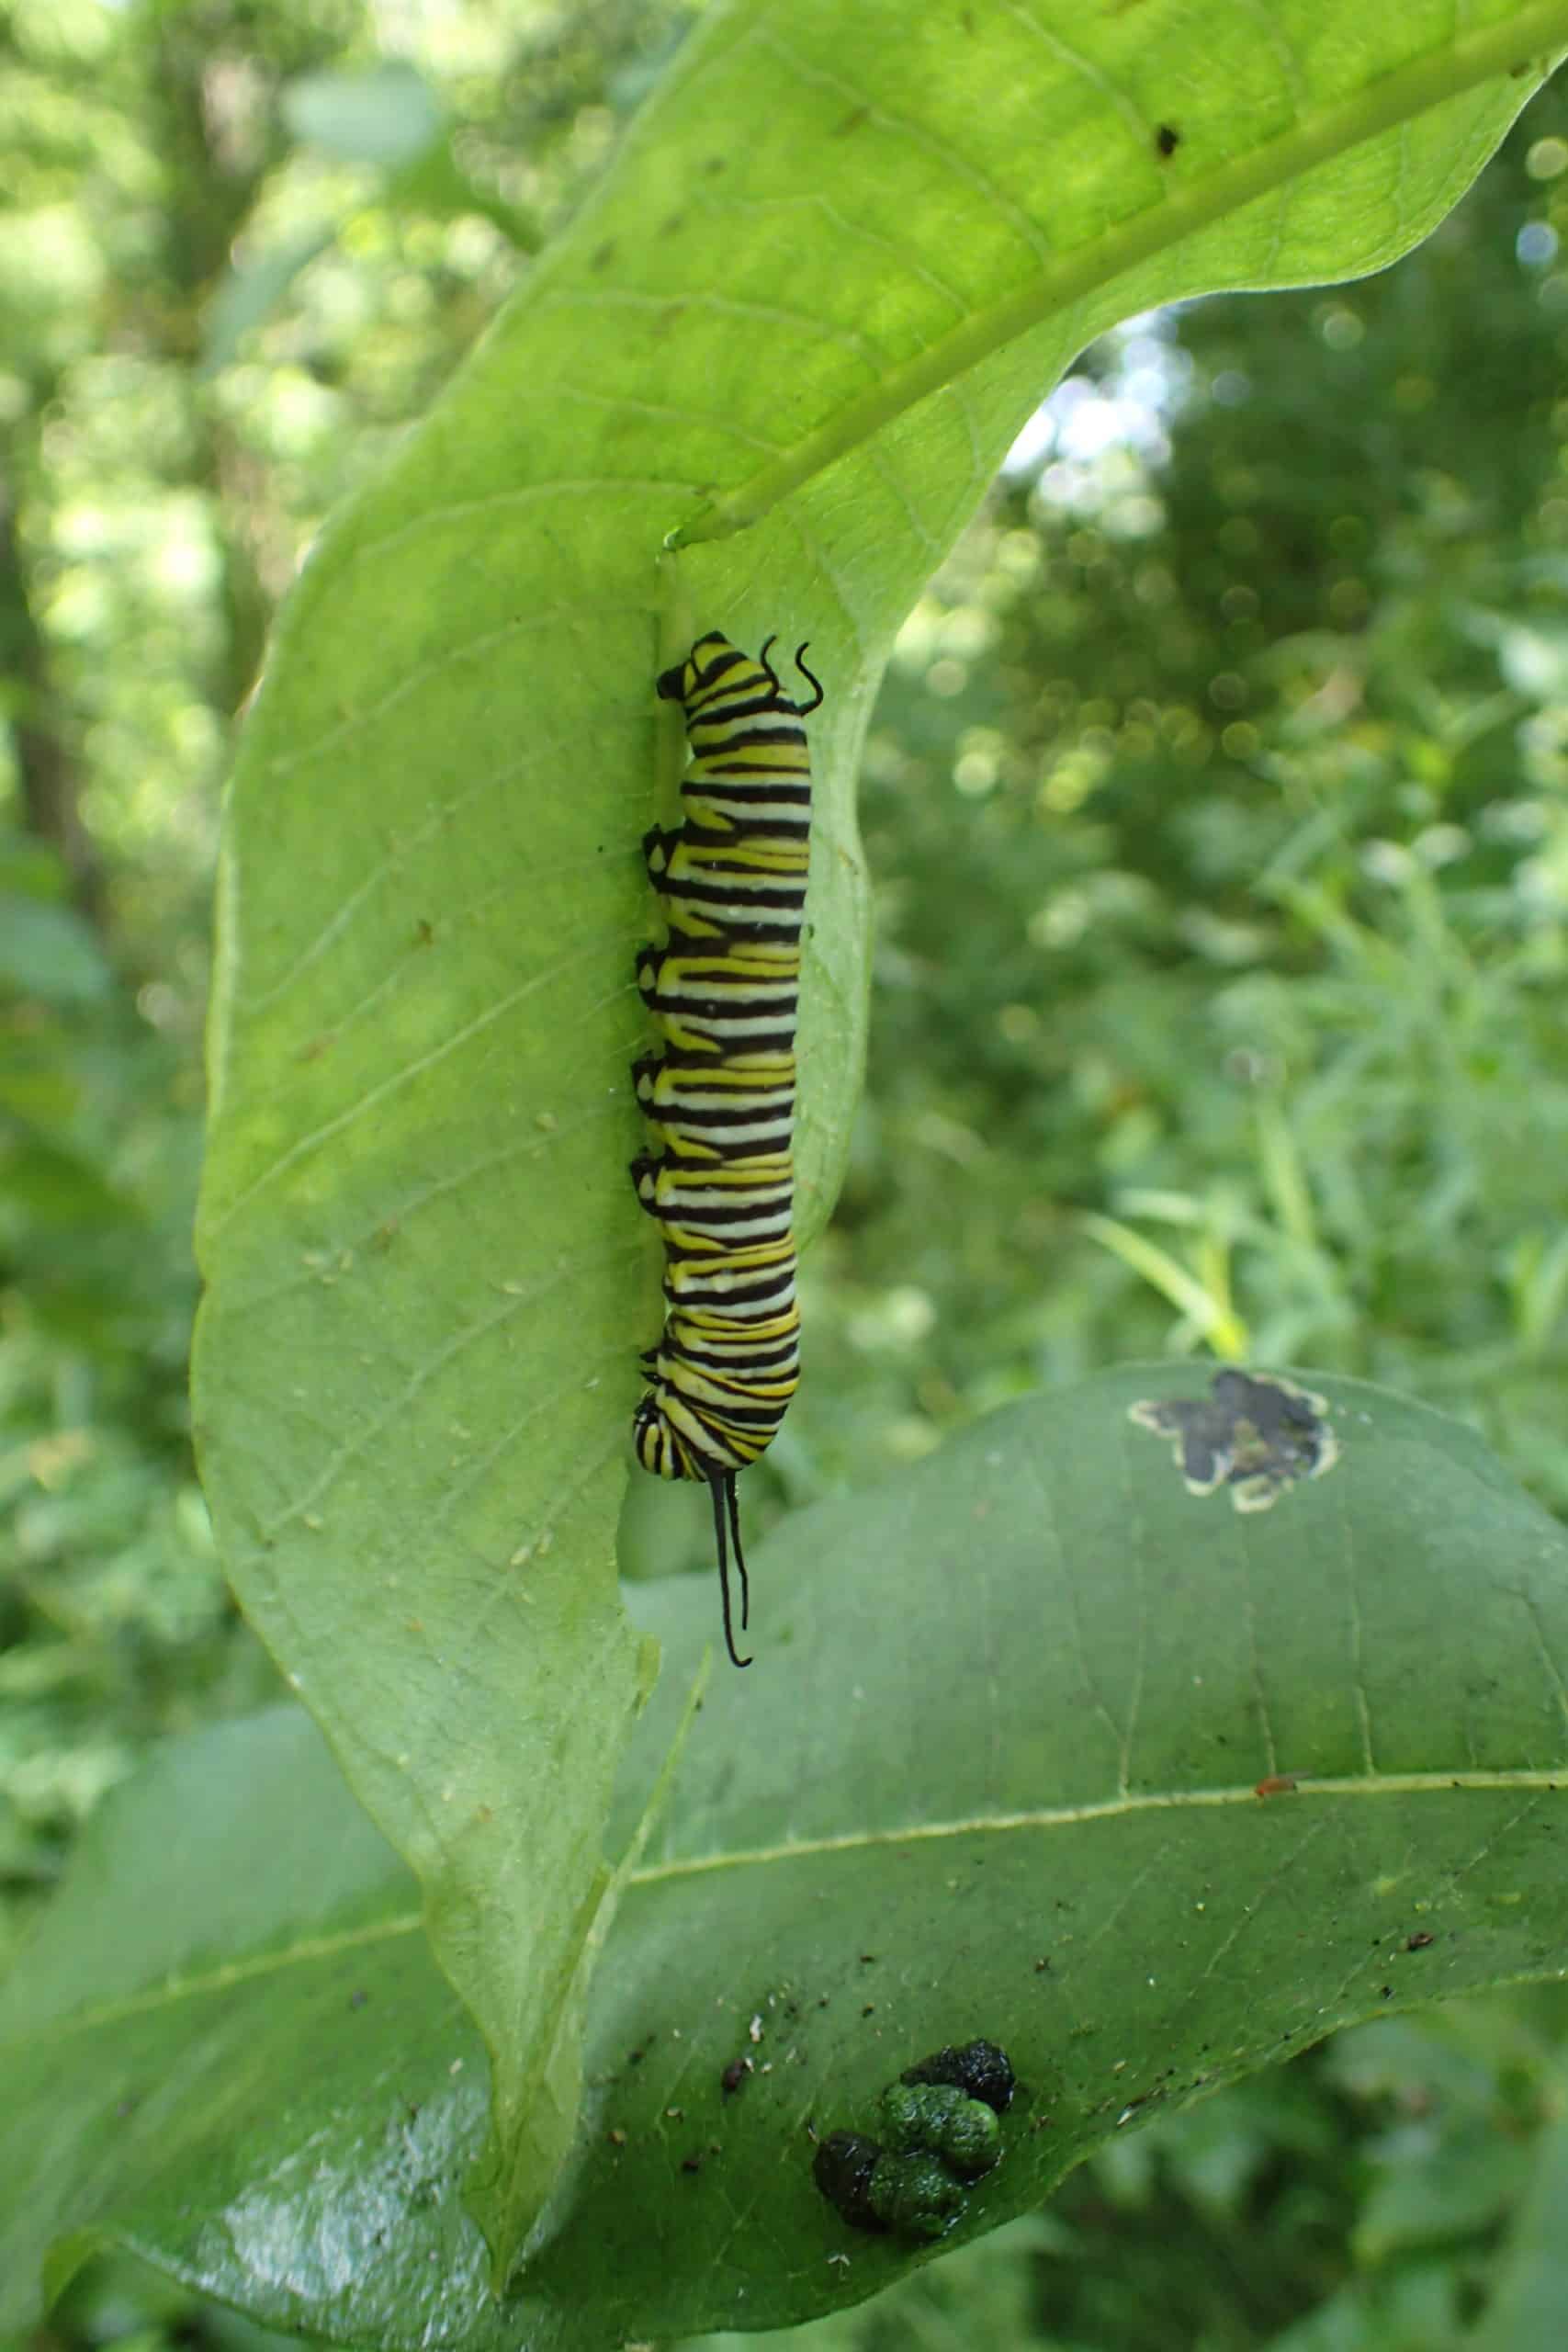 Monarch caterpillar under leaf